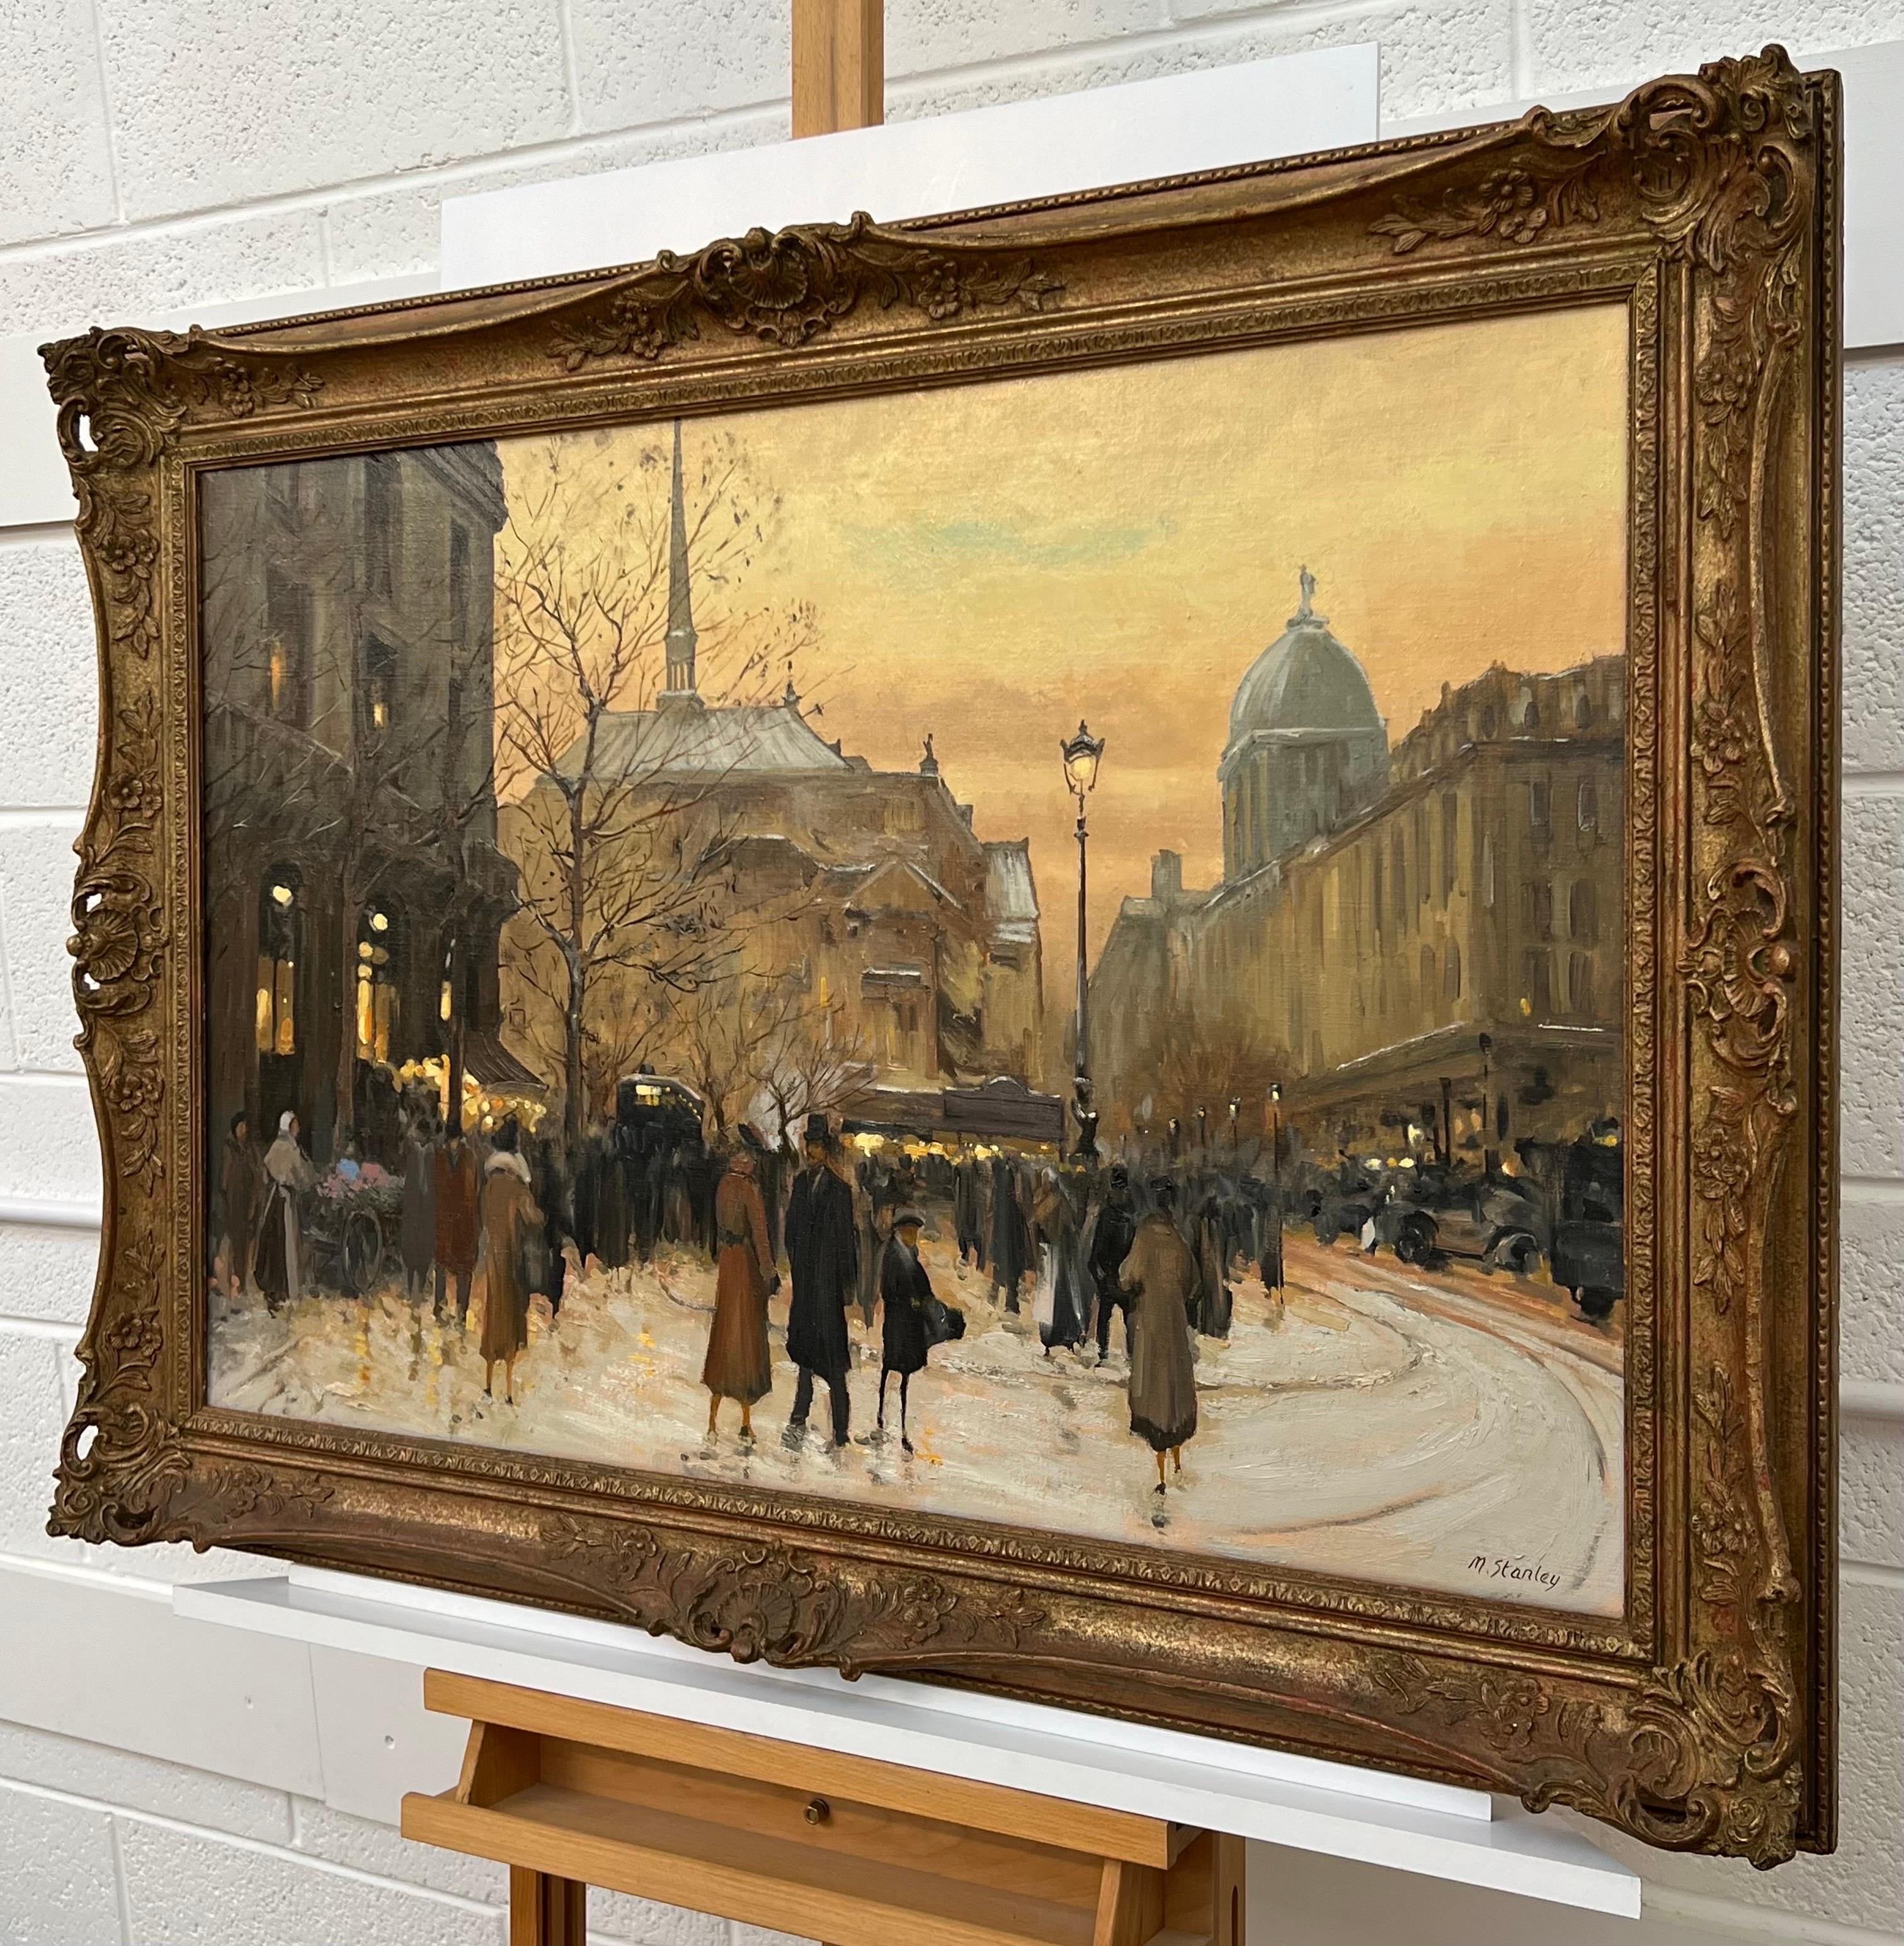 Gemälde mit Figuren auf einem Pariser Markt zur Winterzeit im späten 19. Jahrhundert, von M-One. Dies ist ein signiertes Original, Öl auf Leinwand, in gutem Zustand. Präsentiert in einem verschnörkelten Vintage-Rahmen. 

Kunst misst 36 x 24 Zoll